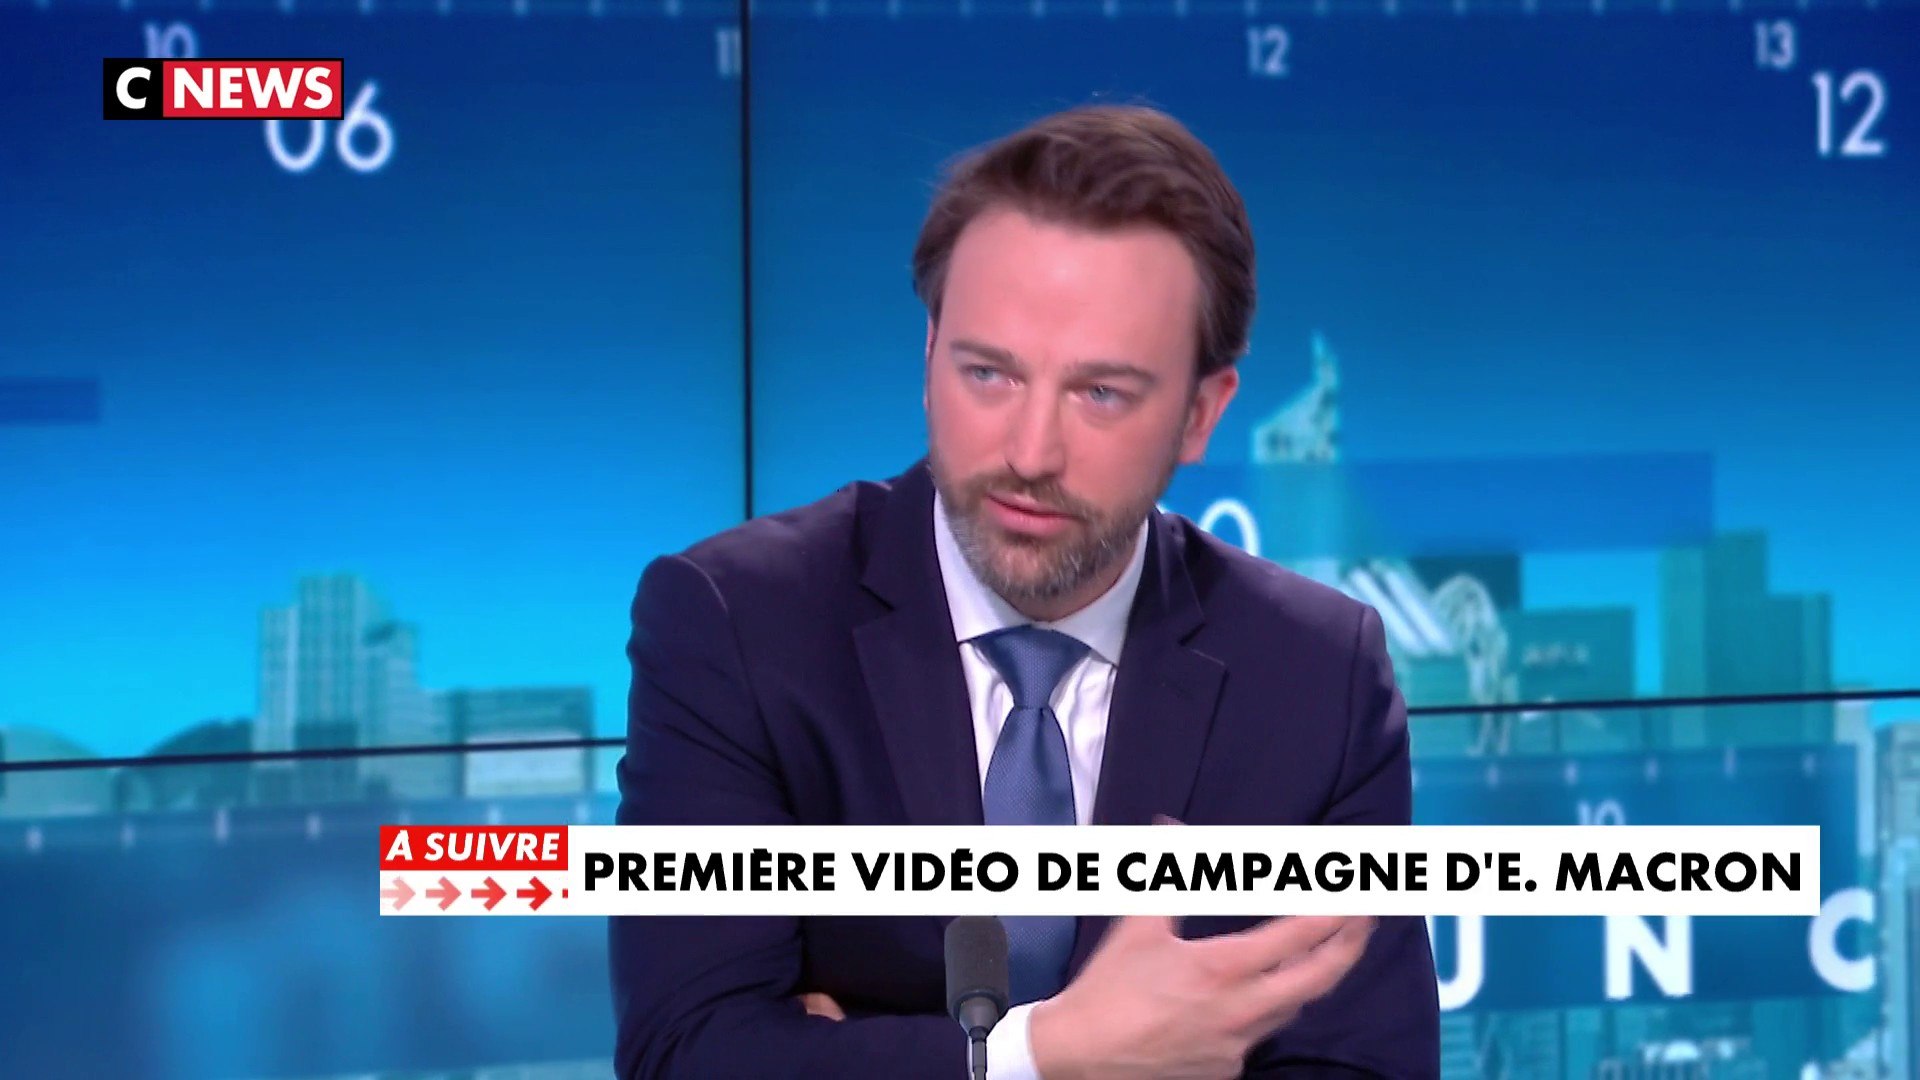 La vidéo de campagne d'Emmanuel Macron «n'est pas un clip de campagne  classique», d'après un journaliste de CNEWS - Vidéo Dailymotion